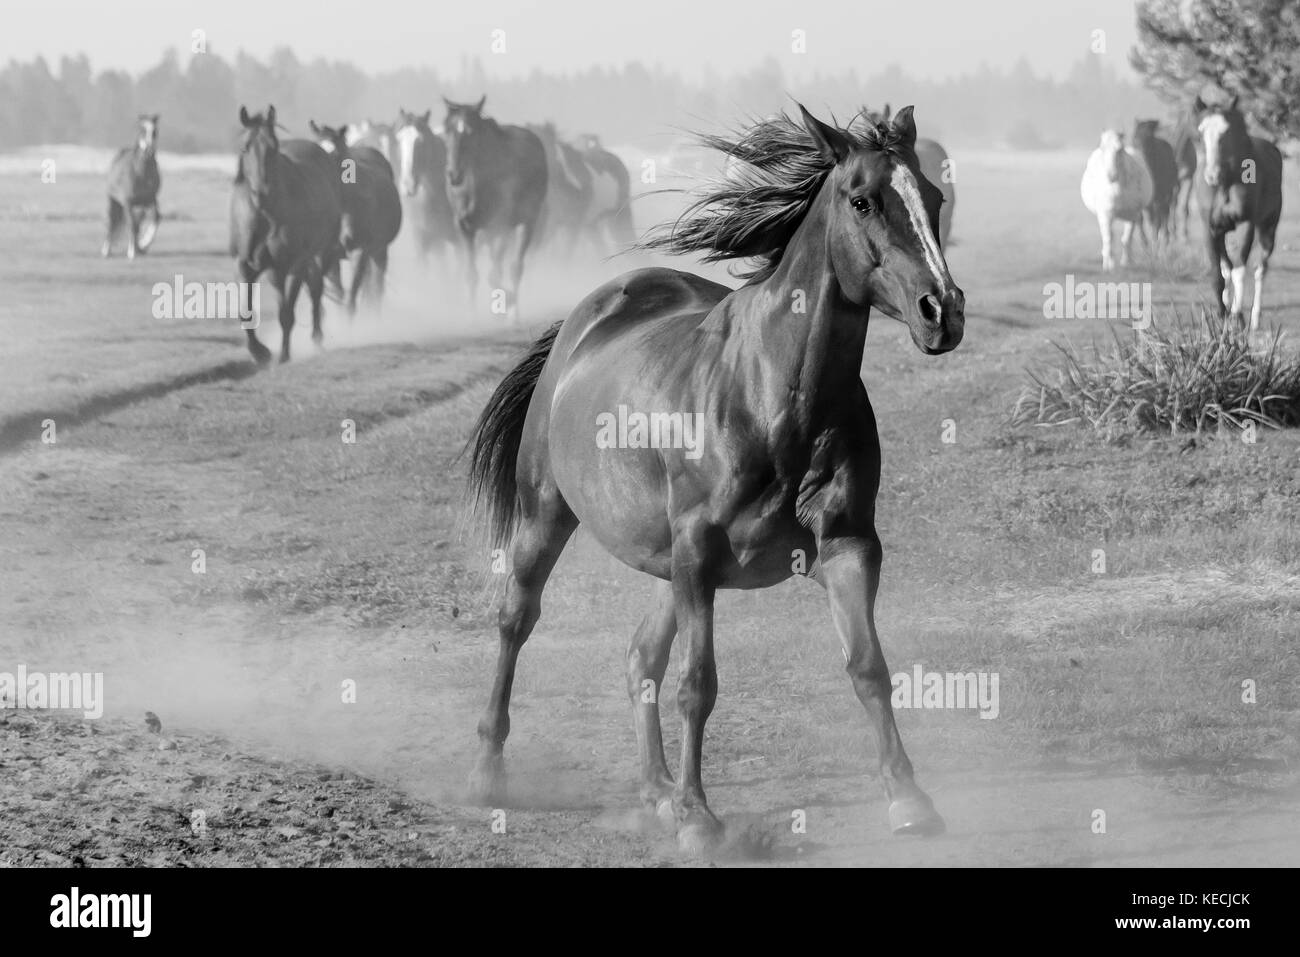 Einem ungezügelten amerikanischen Pferd läuft vor der Herde in den amerikanischen Westen, Mähne dahinter fliegen, ein schwarz-weiß Foto von Pferde Stockfoto